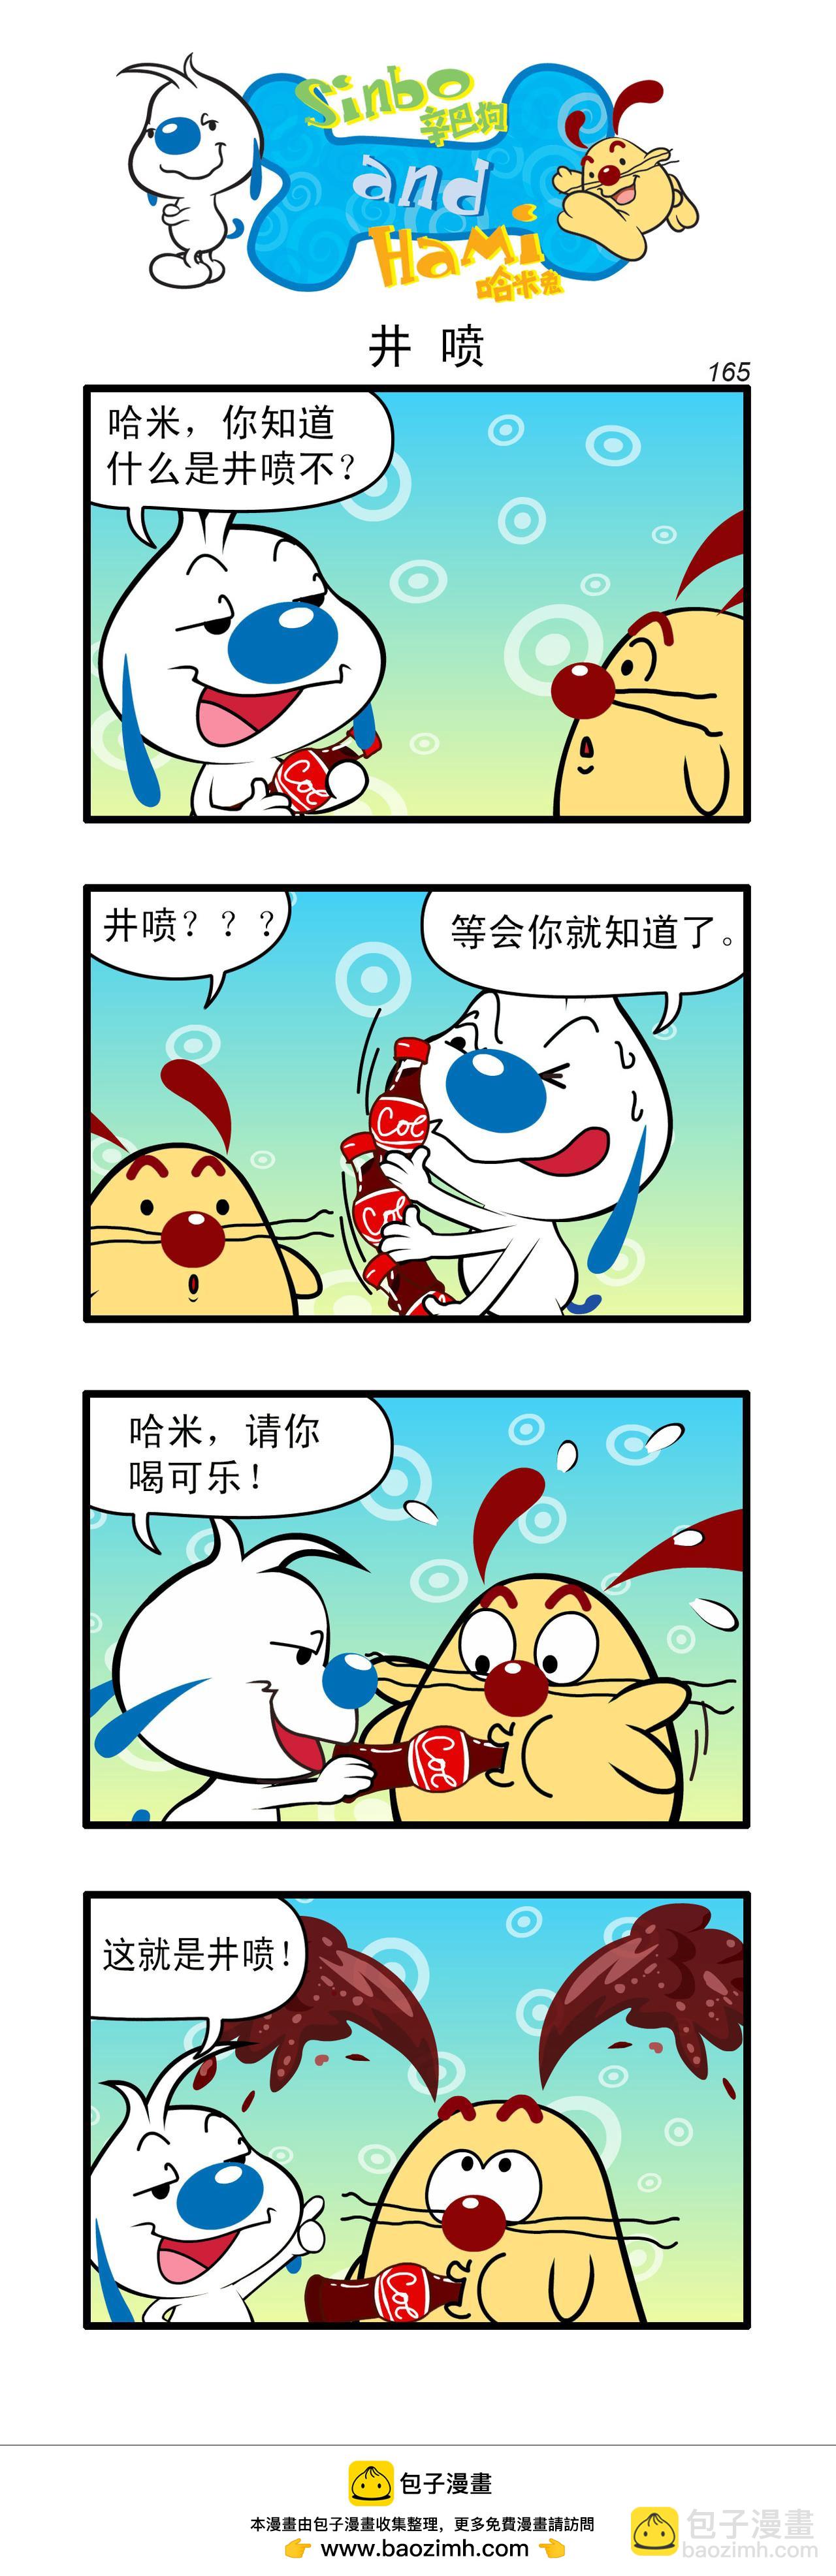 辛巴狗日常漫畫 - 多格48 - 1